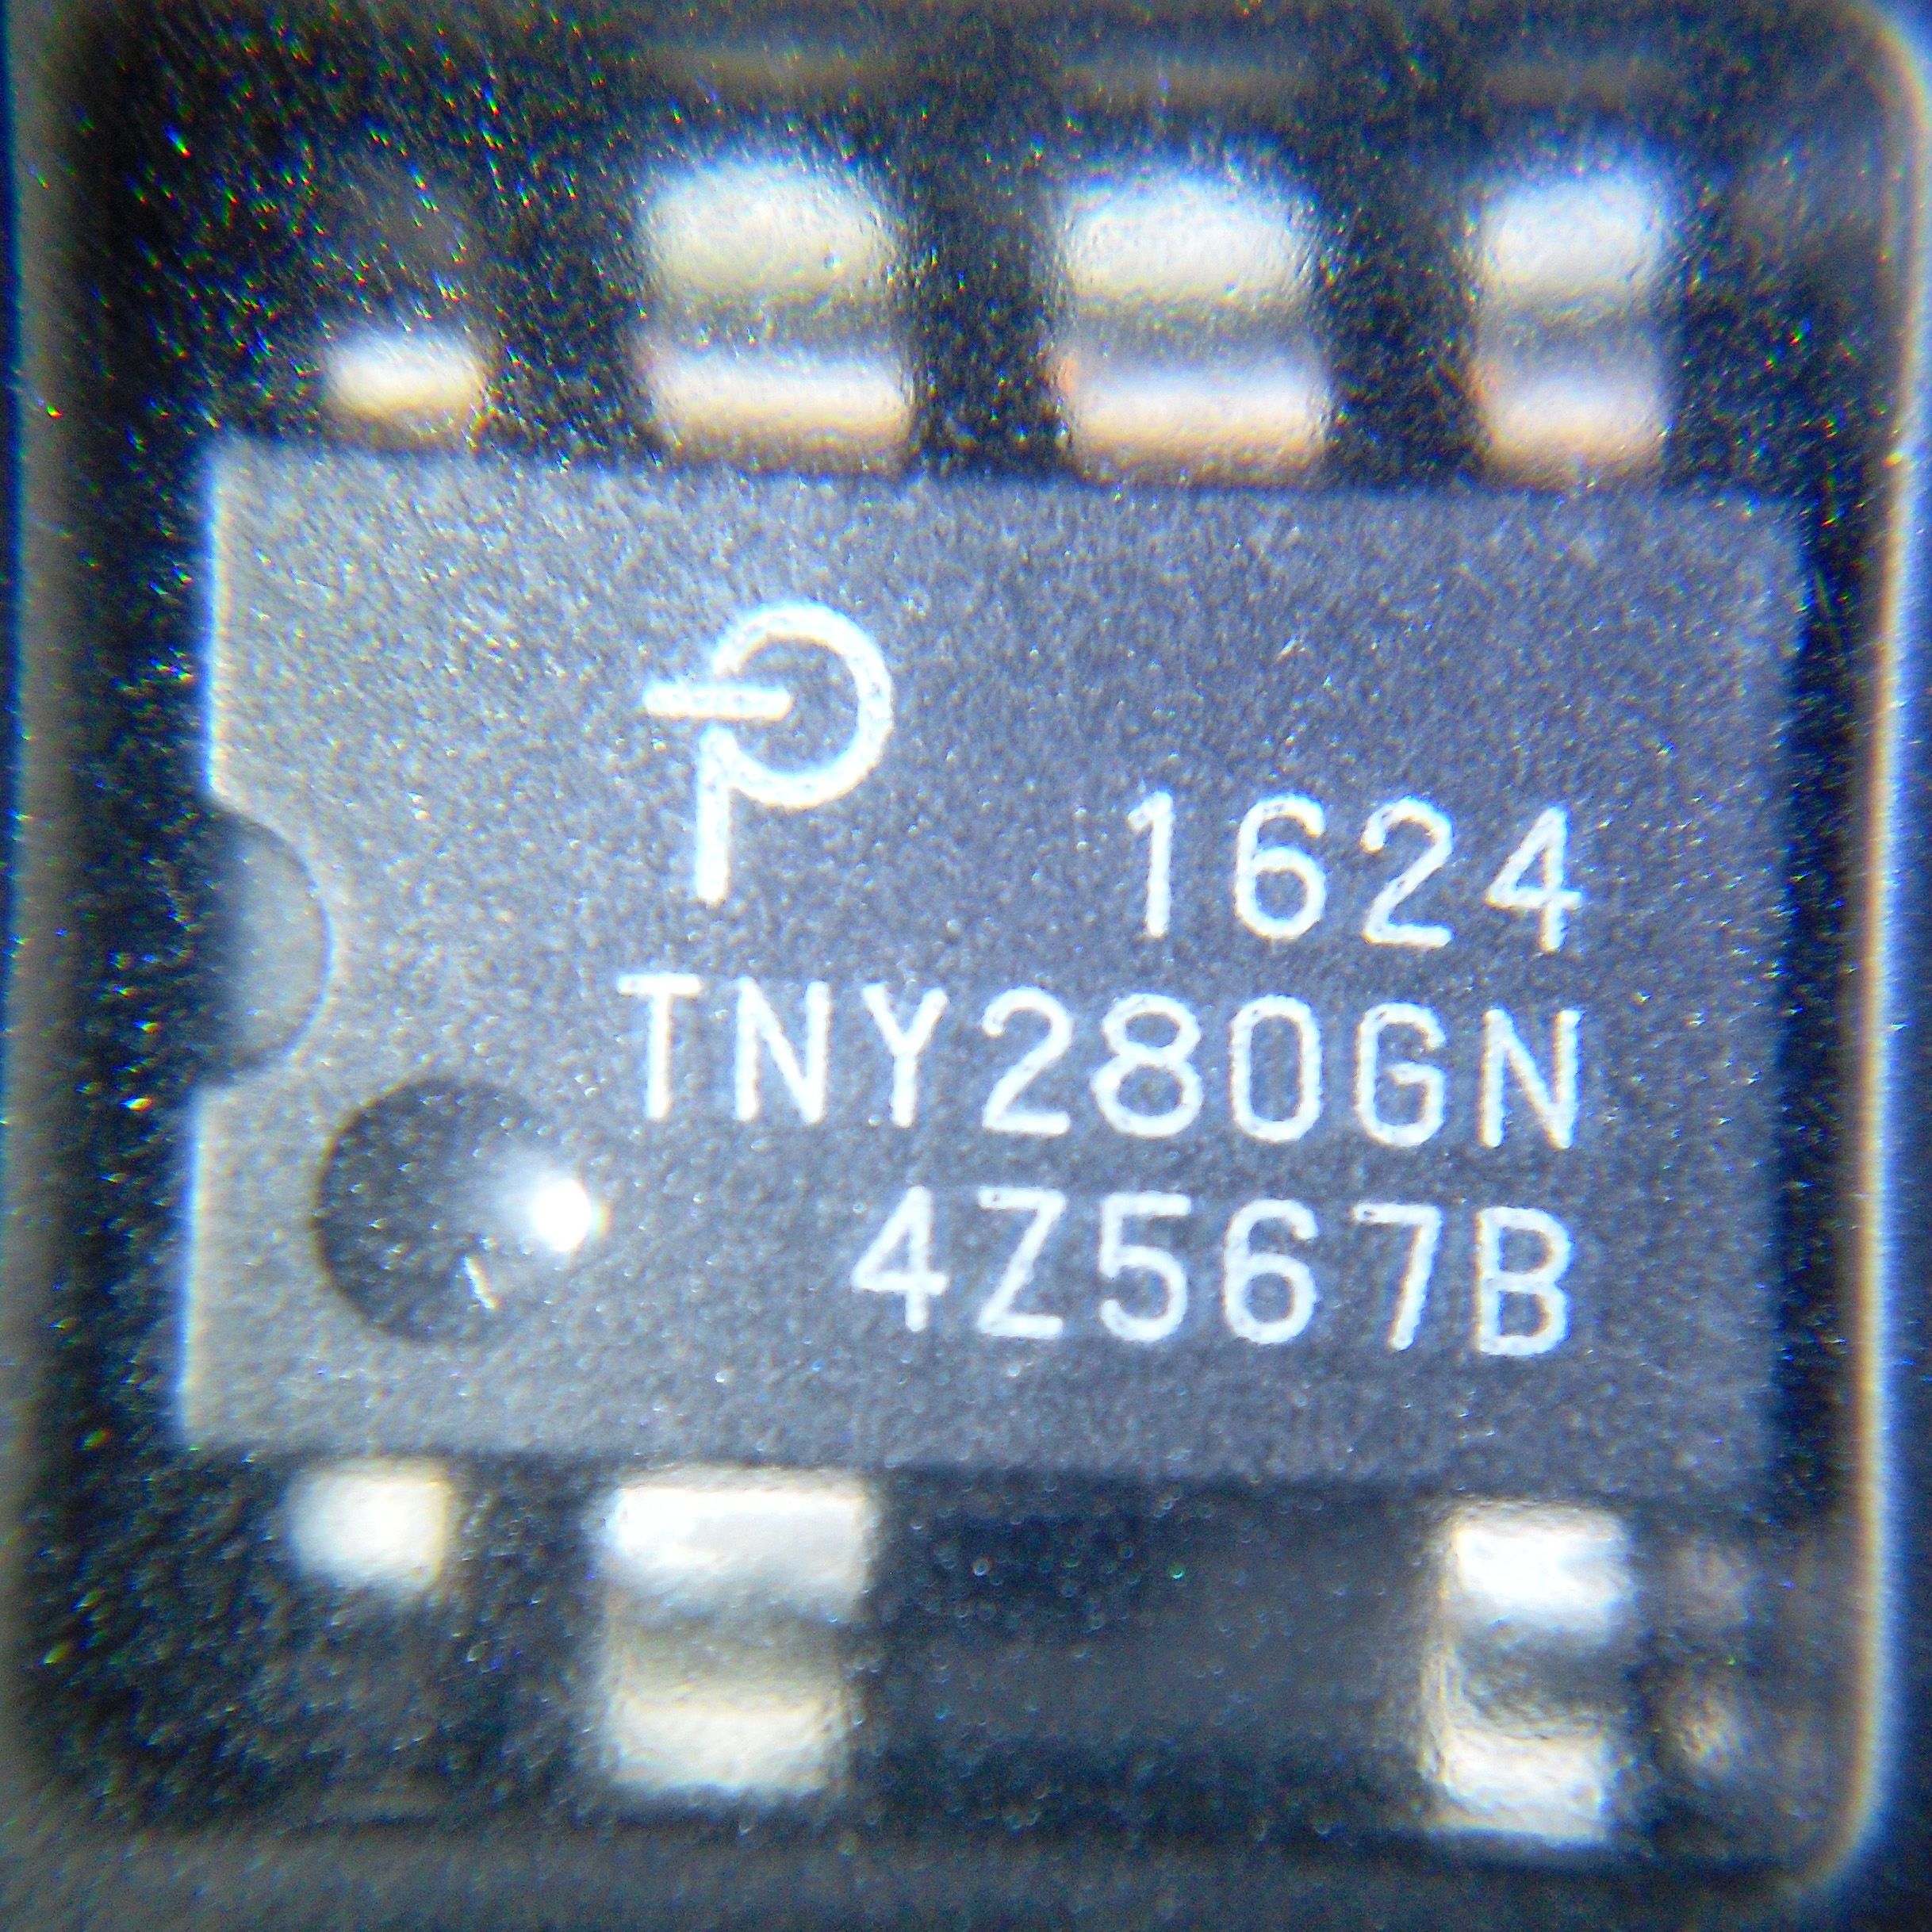 TNY280GN-Power Integrations